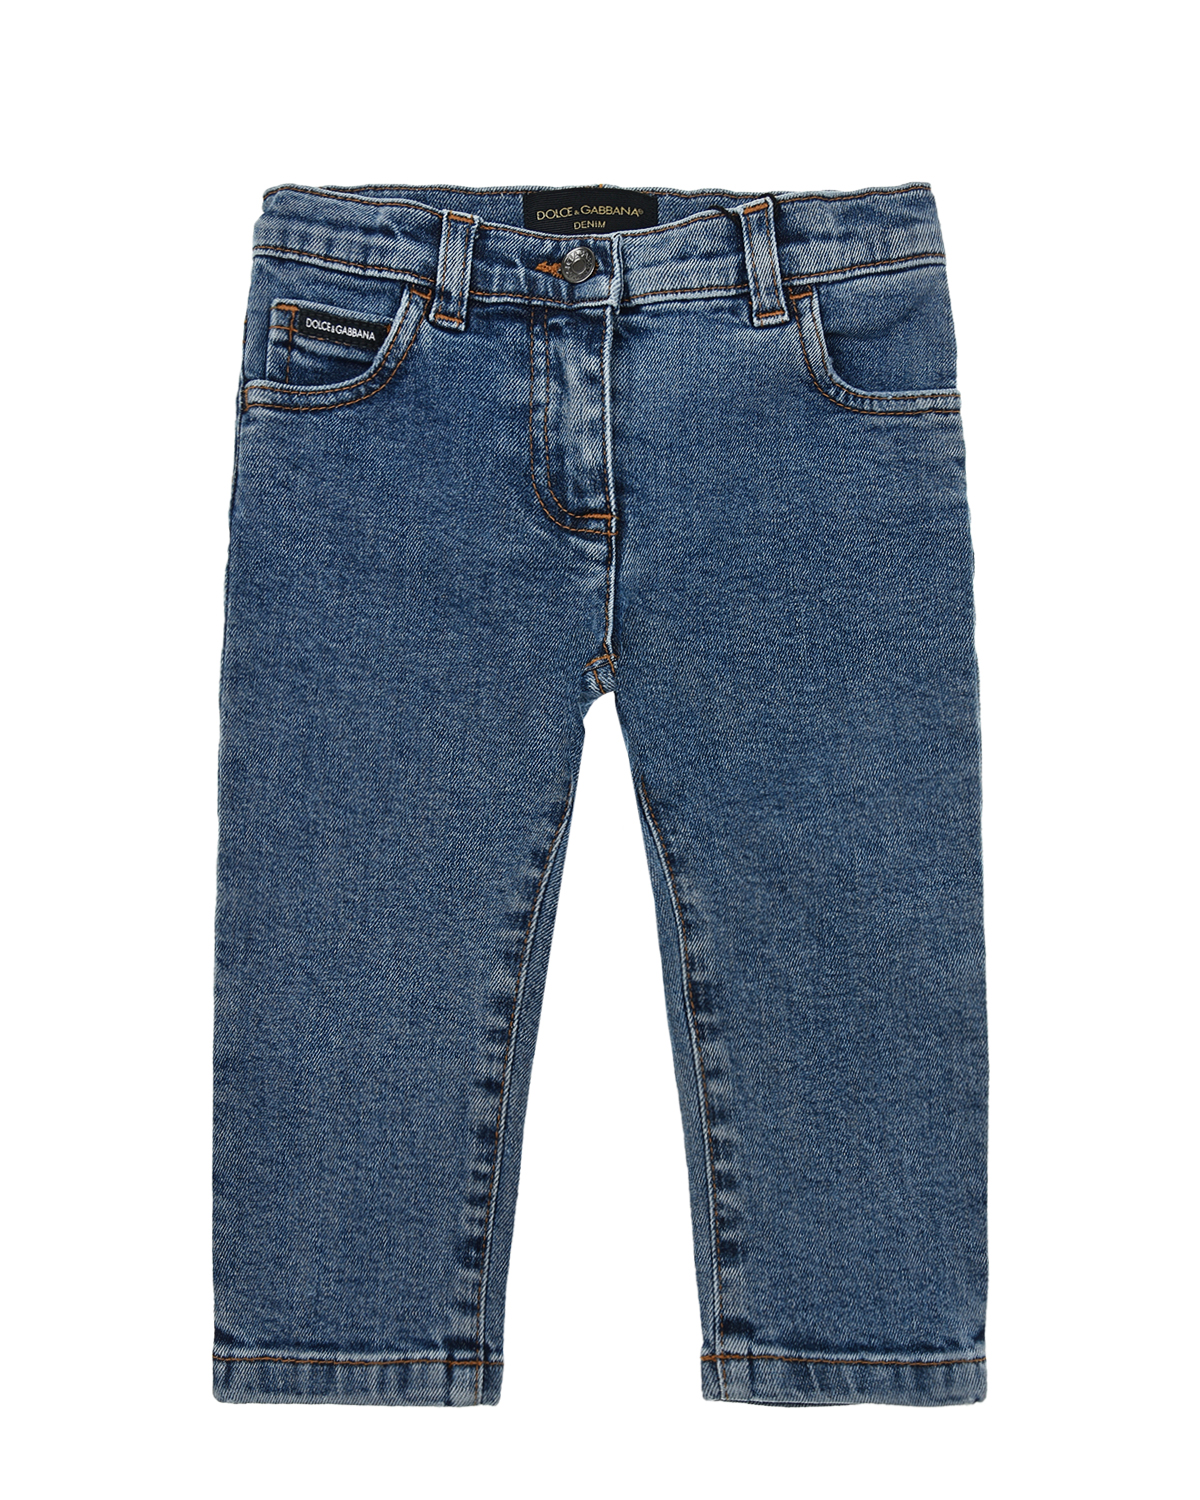 Базовые джинсы для девочек Dolce&Gabbana детские, размер 68, цвет голубой - фото 1